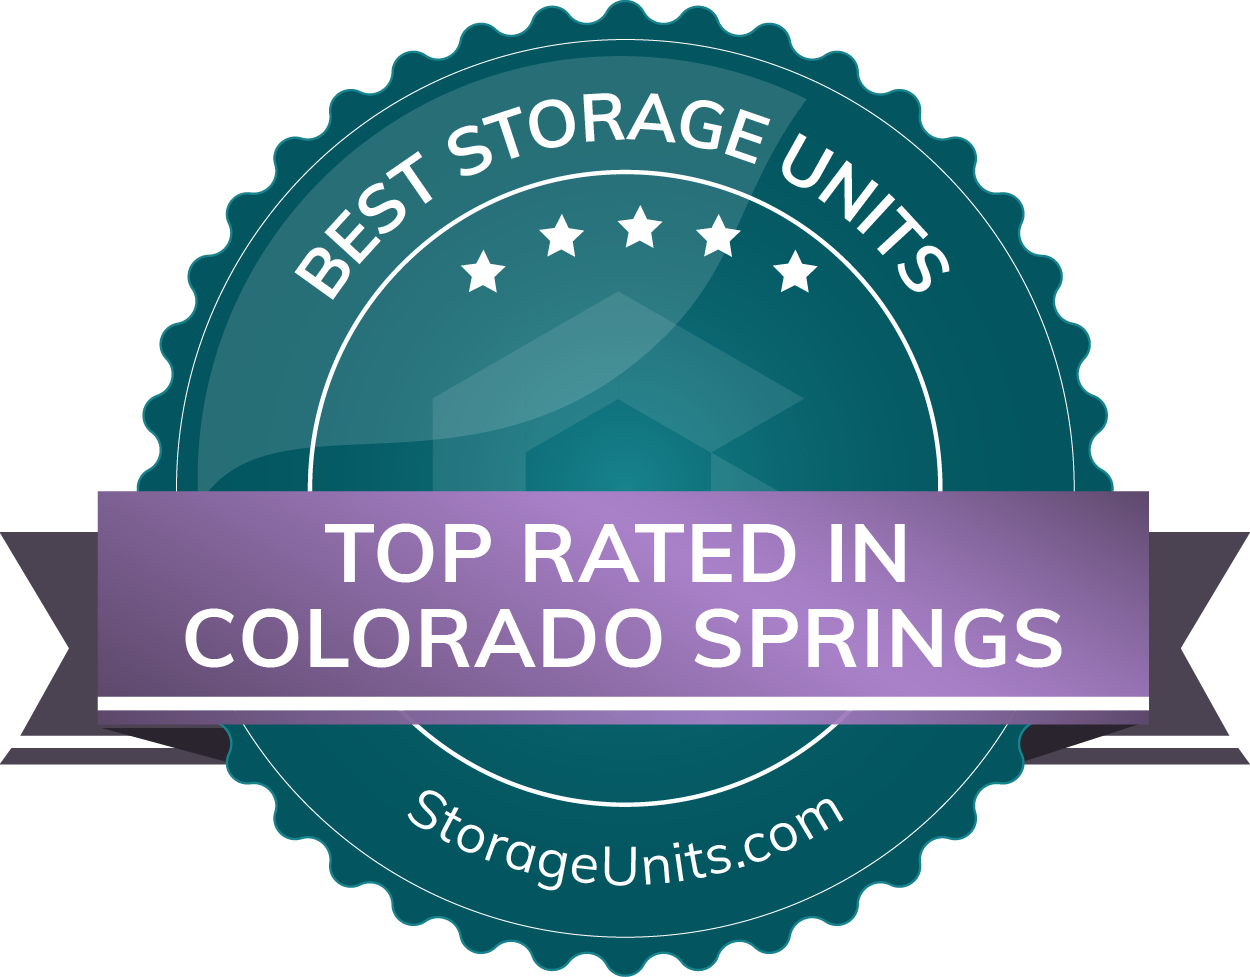 Best Self Storage Units in Colorado Springs, Colorado of 2022